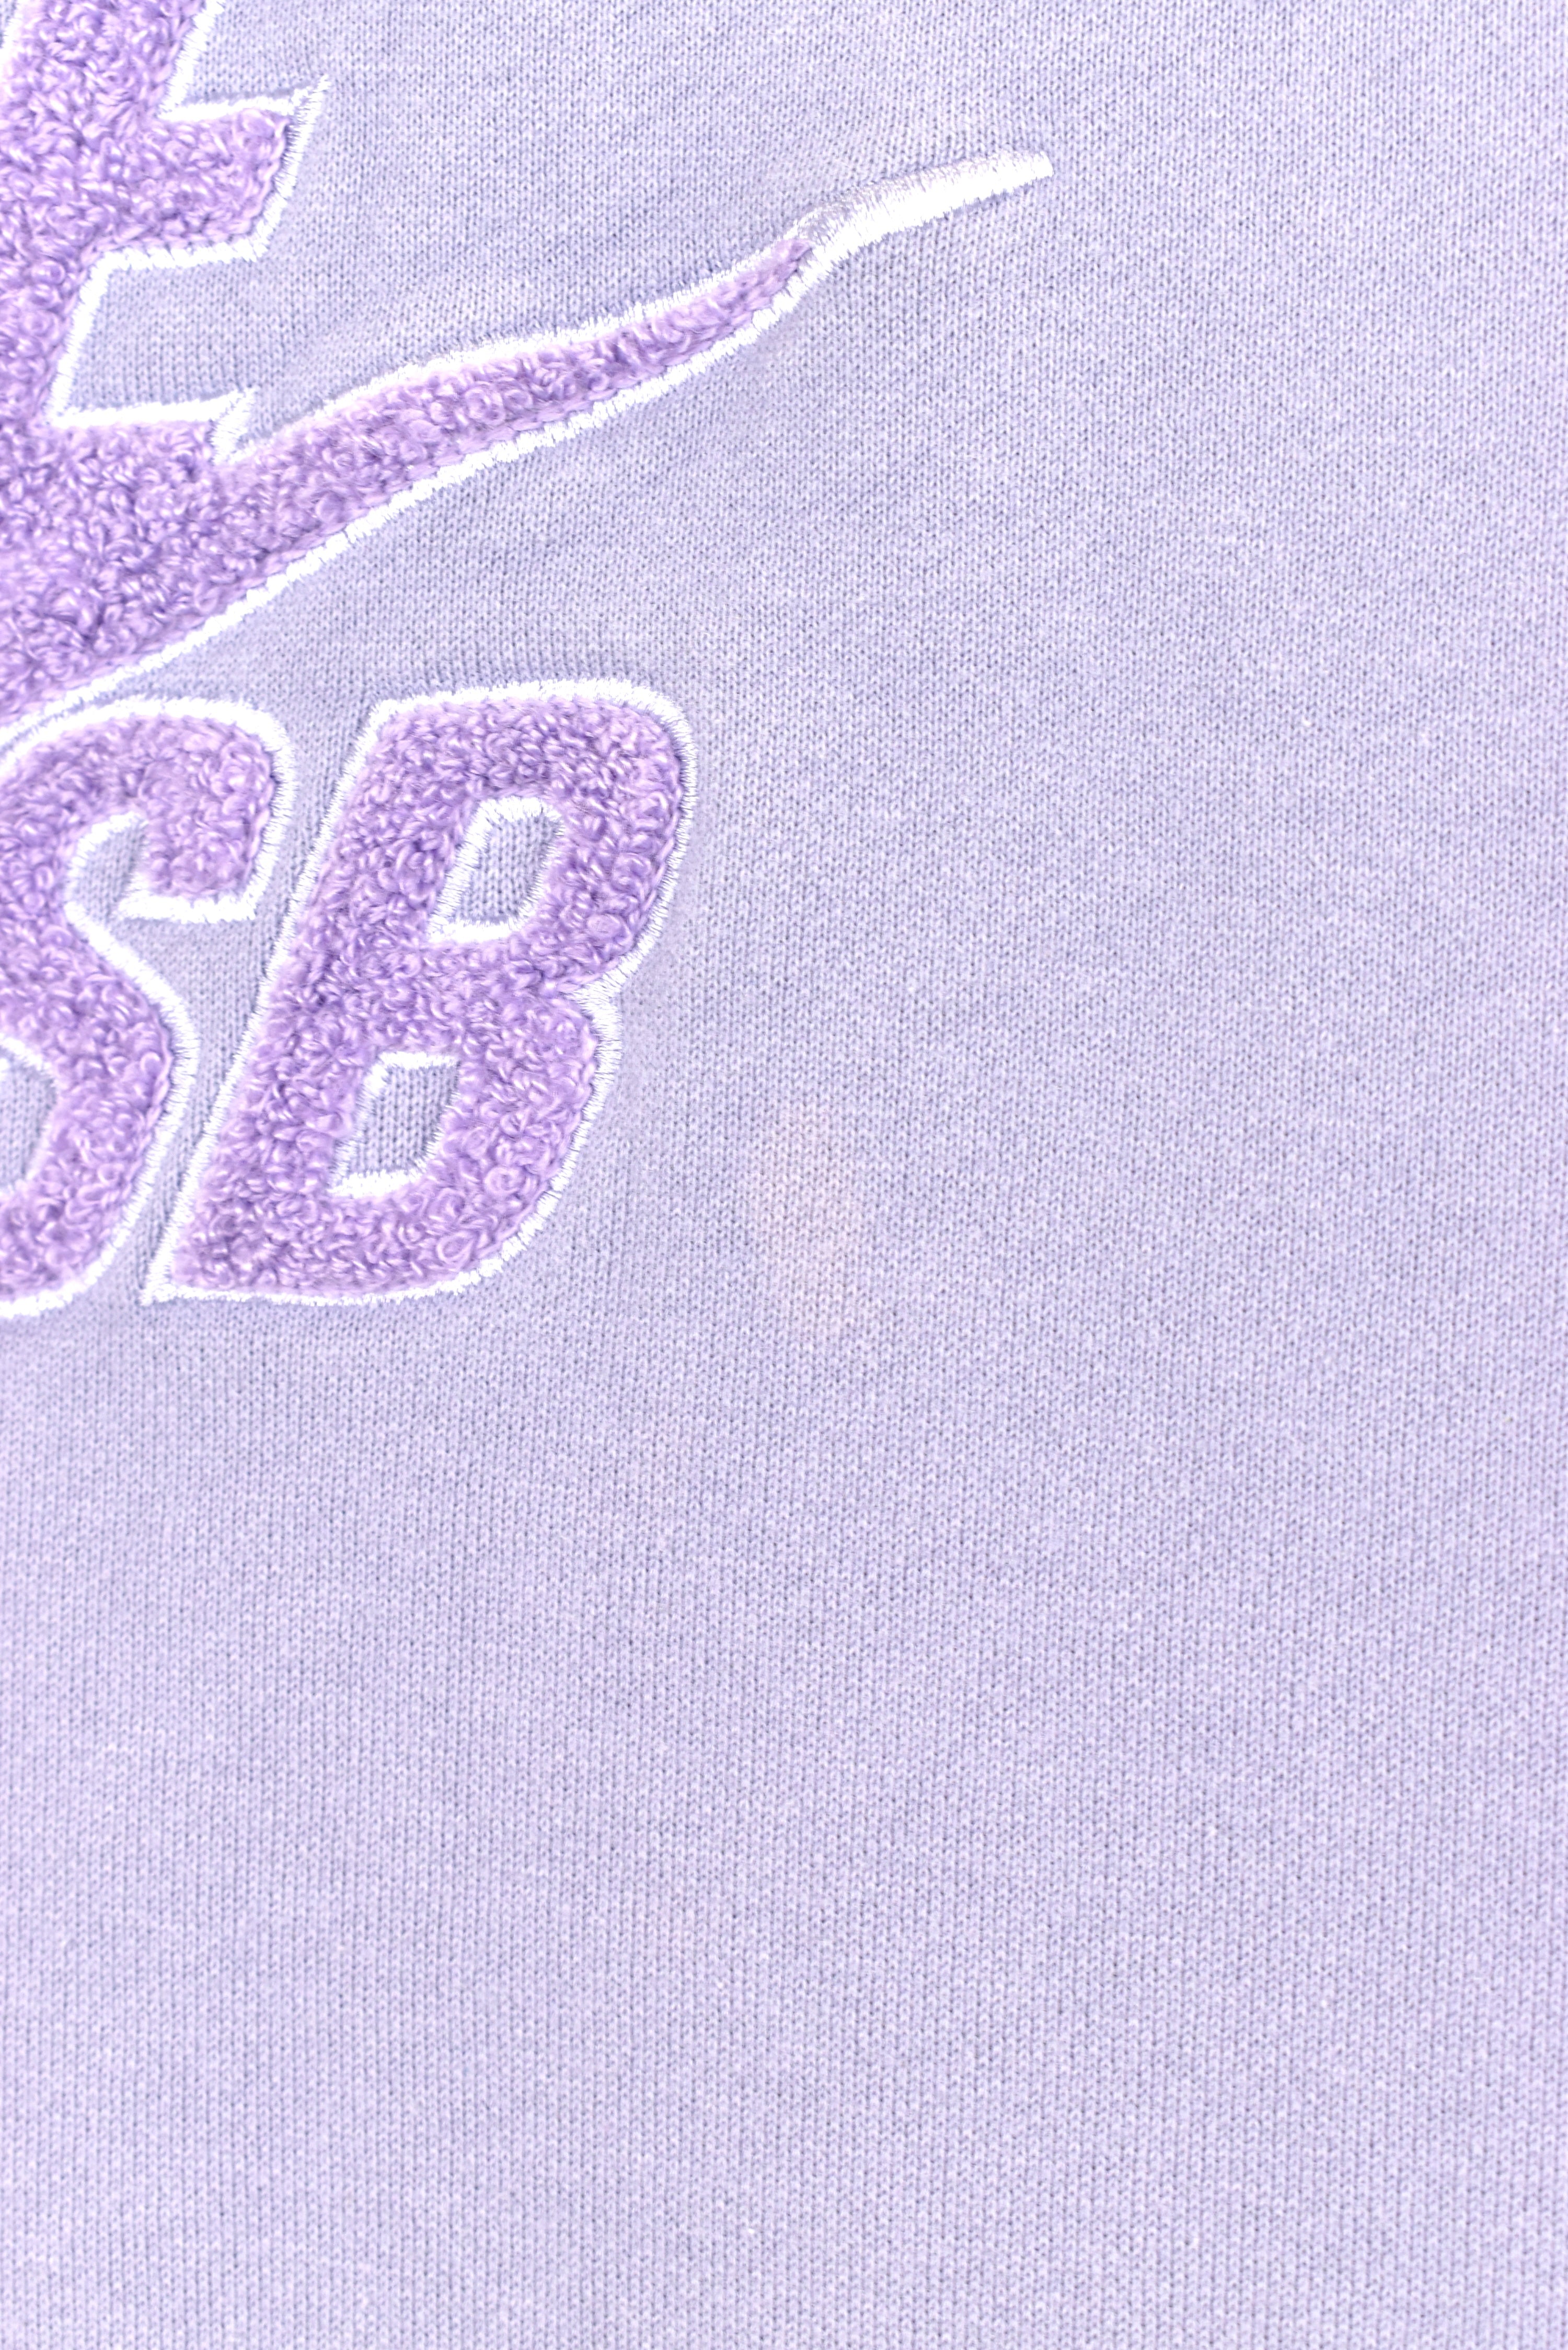 Women's vintage Nike hoodie, purple embroidered sweatshirt - AU Large NIKE